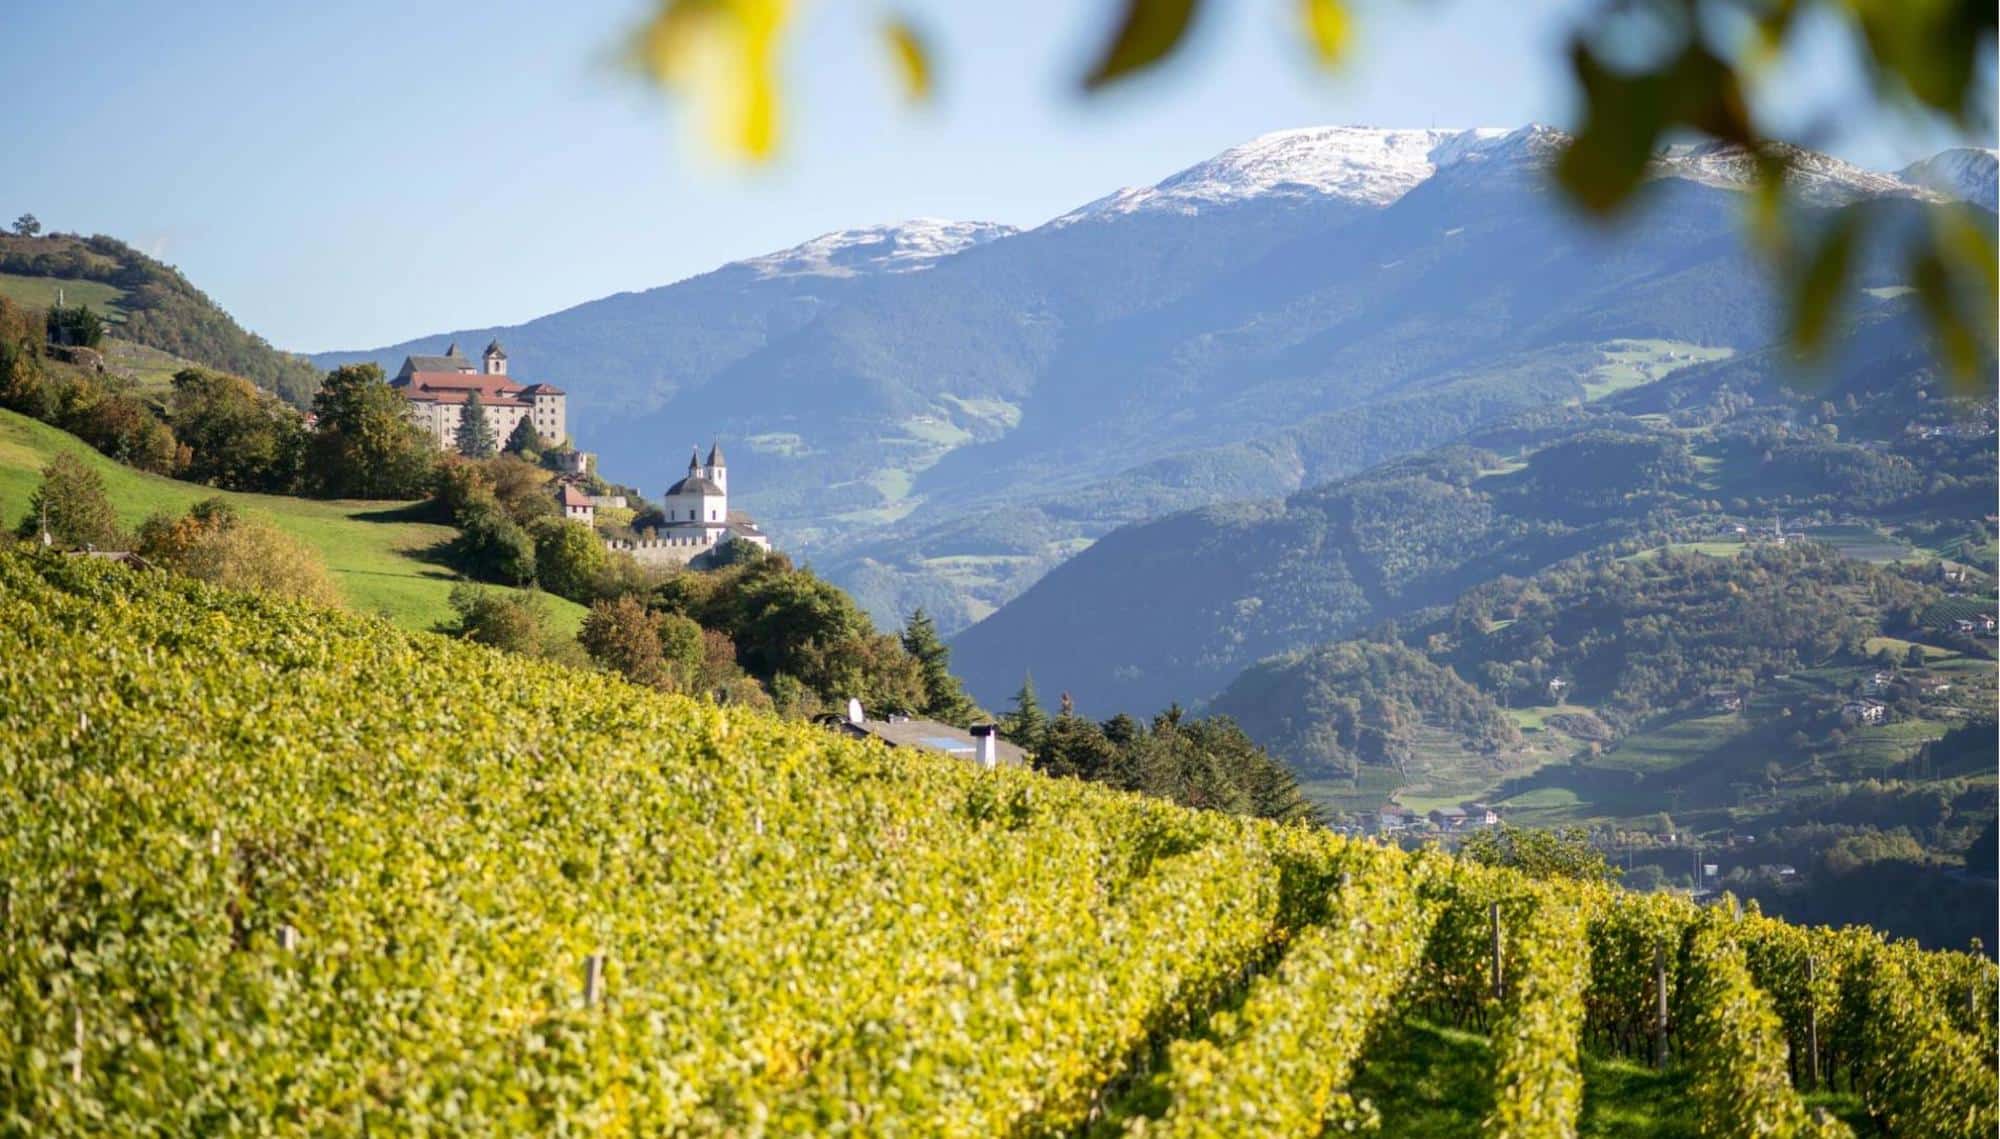 Bild der Aussicht über die Weinberge im Eisacktal, der Weinbauregion in dem sich die Weinkellerei Eisacktal befindet, die unseren Müller-Thurgau-Preis gewonnen hat